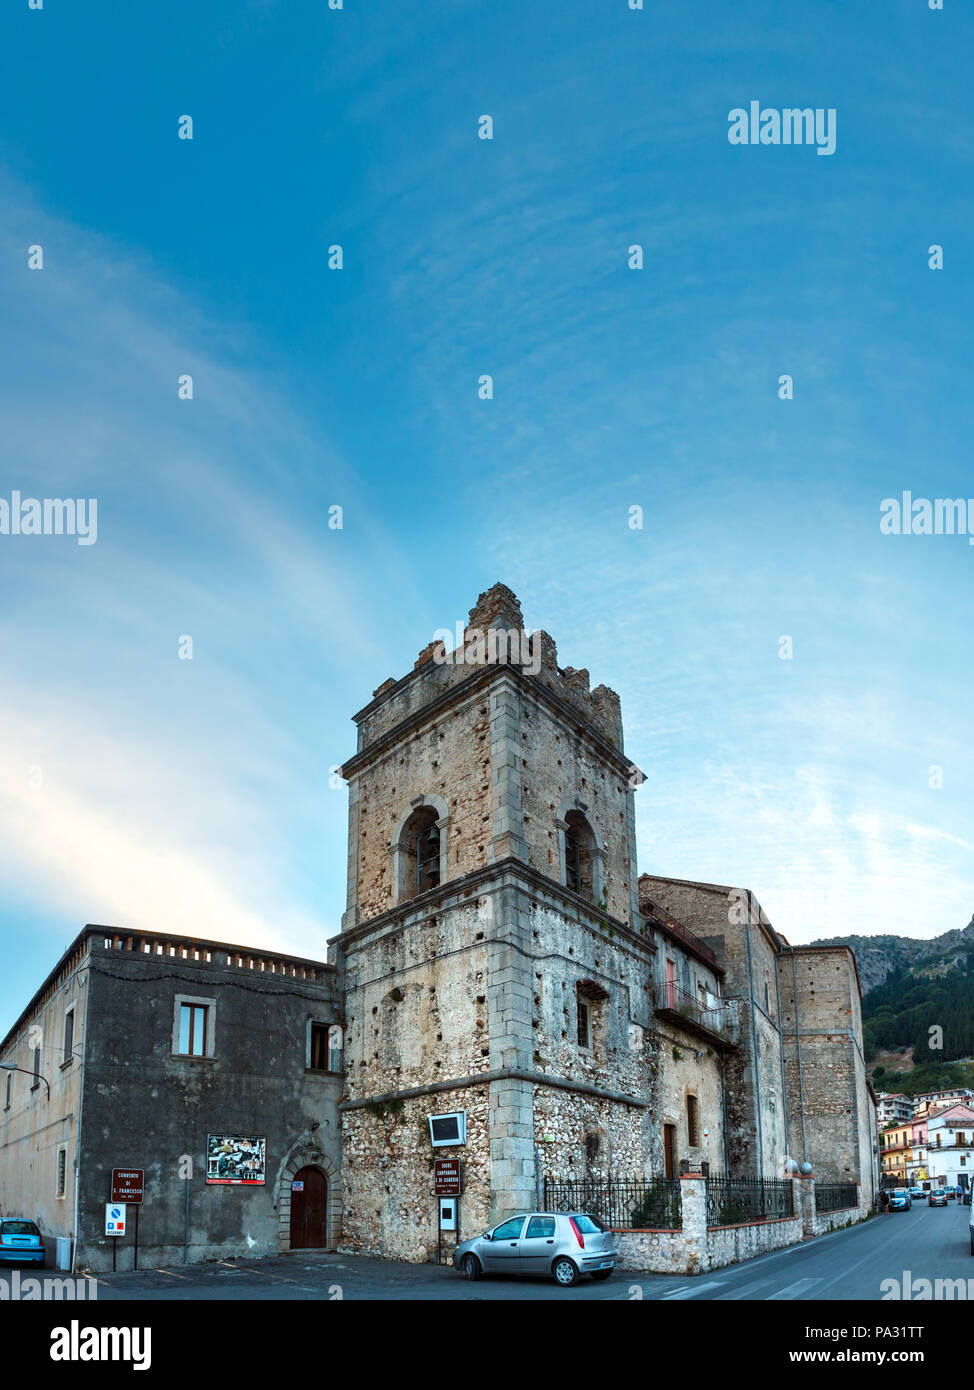 STILO, Italien - 10. JUNI 2017: Abenddämmerung alte mittelalterliche Stilo famos und Blick auf das Dorf in Kalabrien, Süditalien. Stockfoto